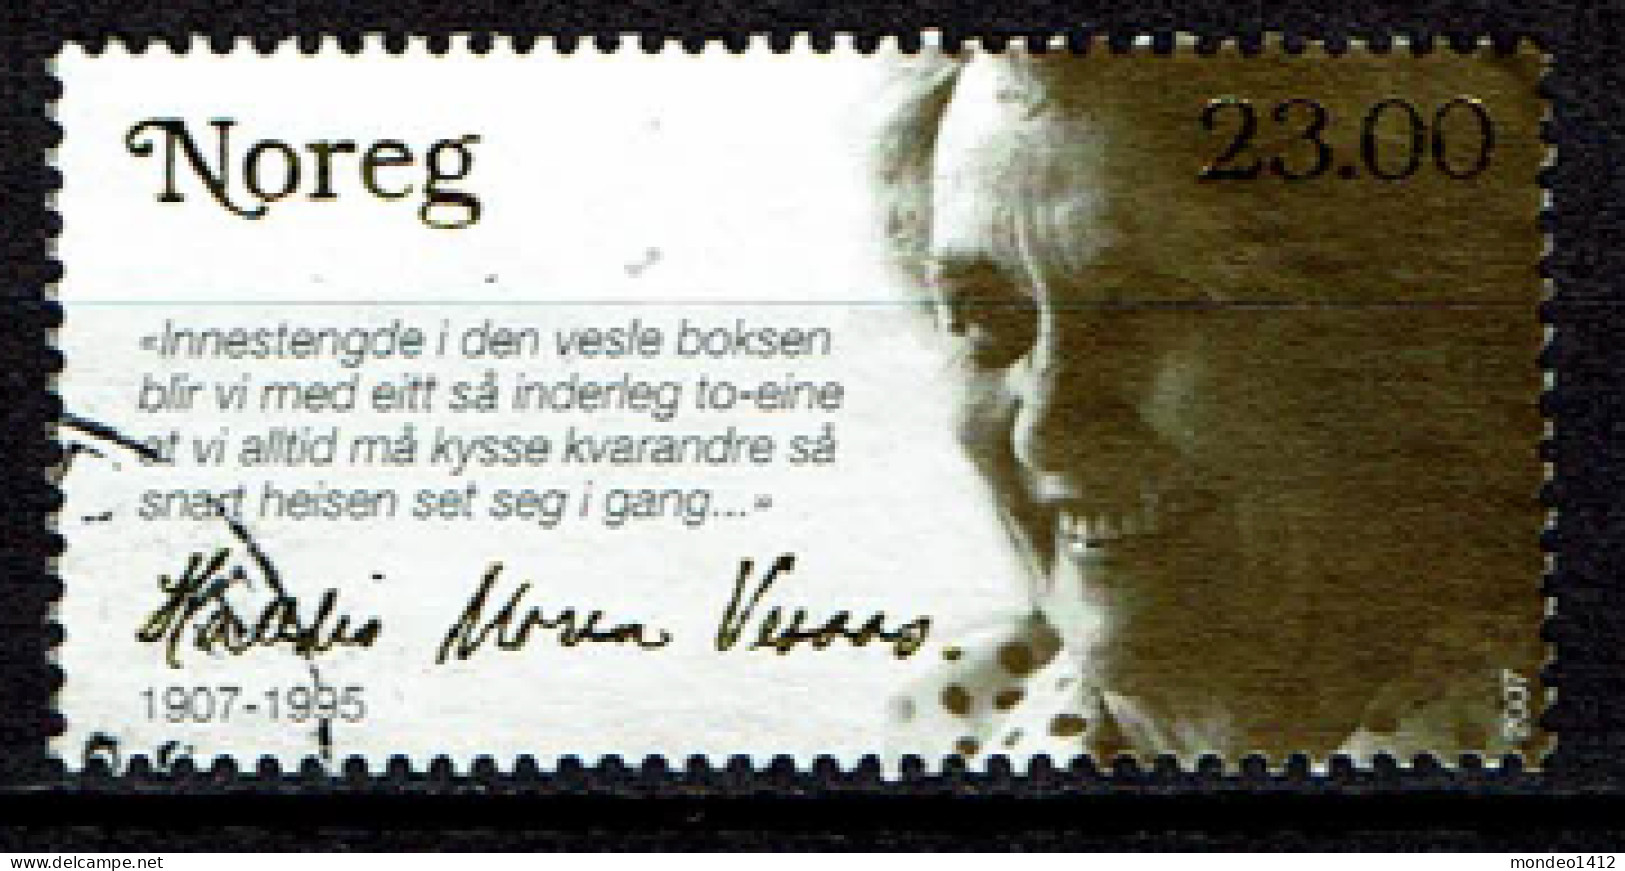 Norway 2007 - Yv.1568  Mi.1629 - Used O - Halldis Moren Vesaas, Norwegian Poet - Used Stamps